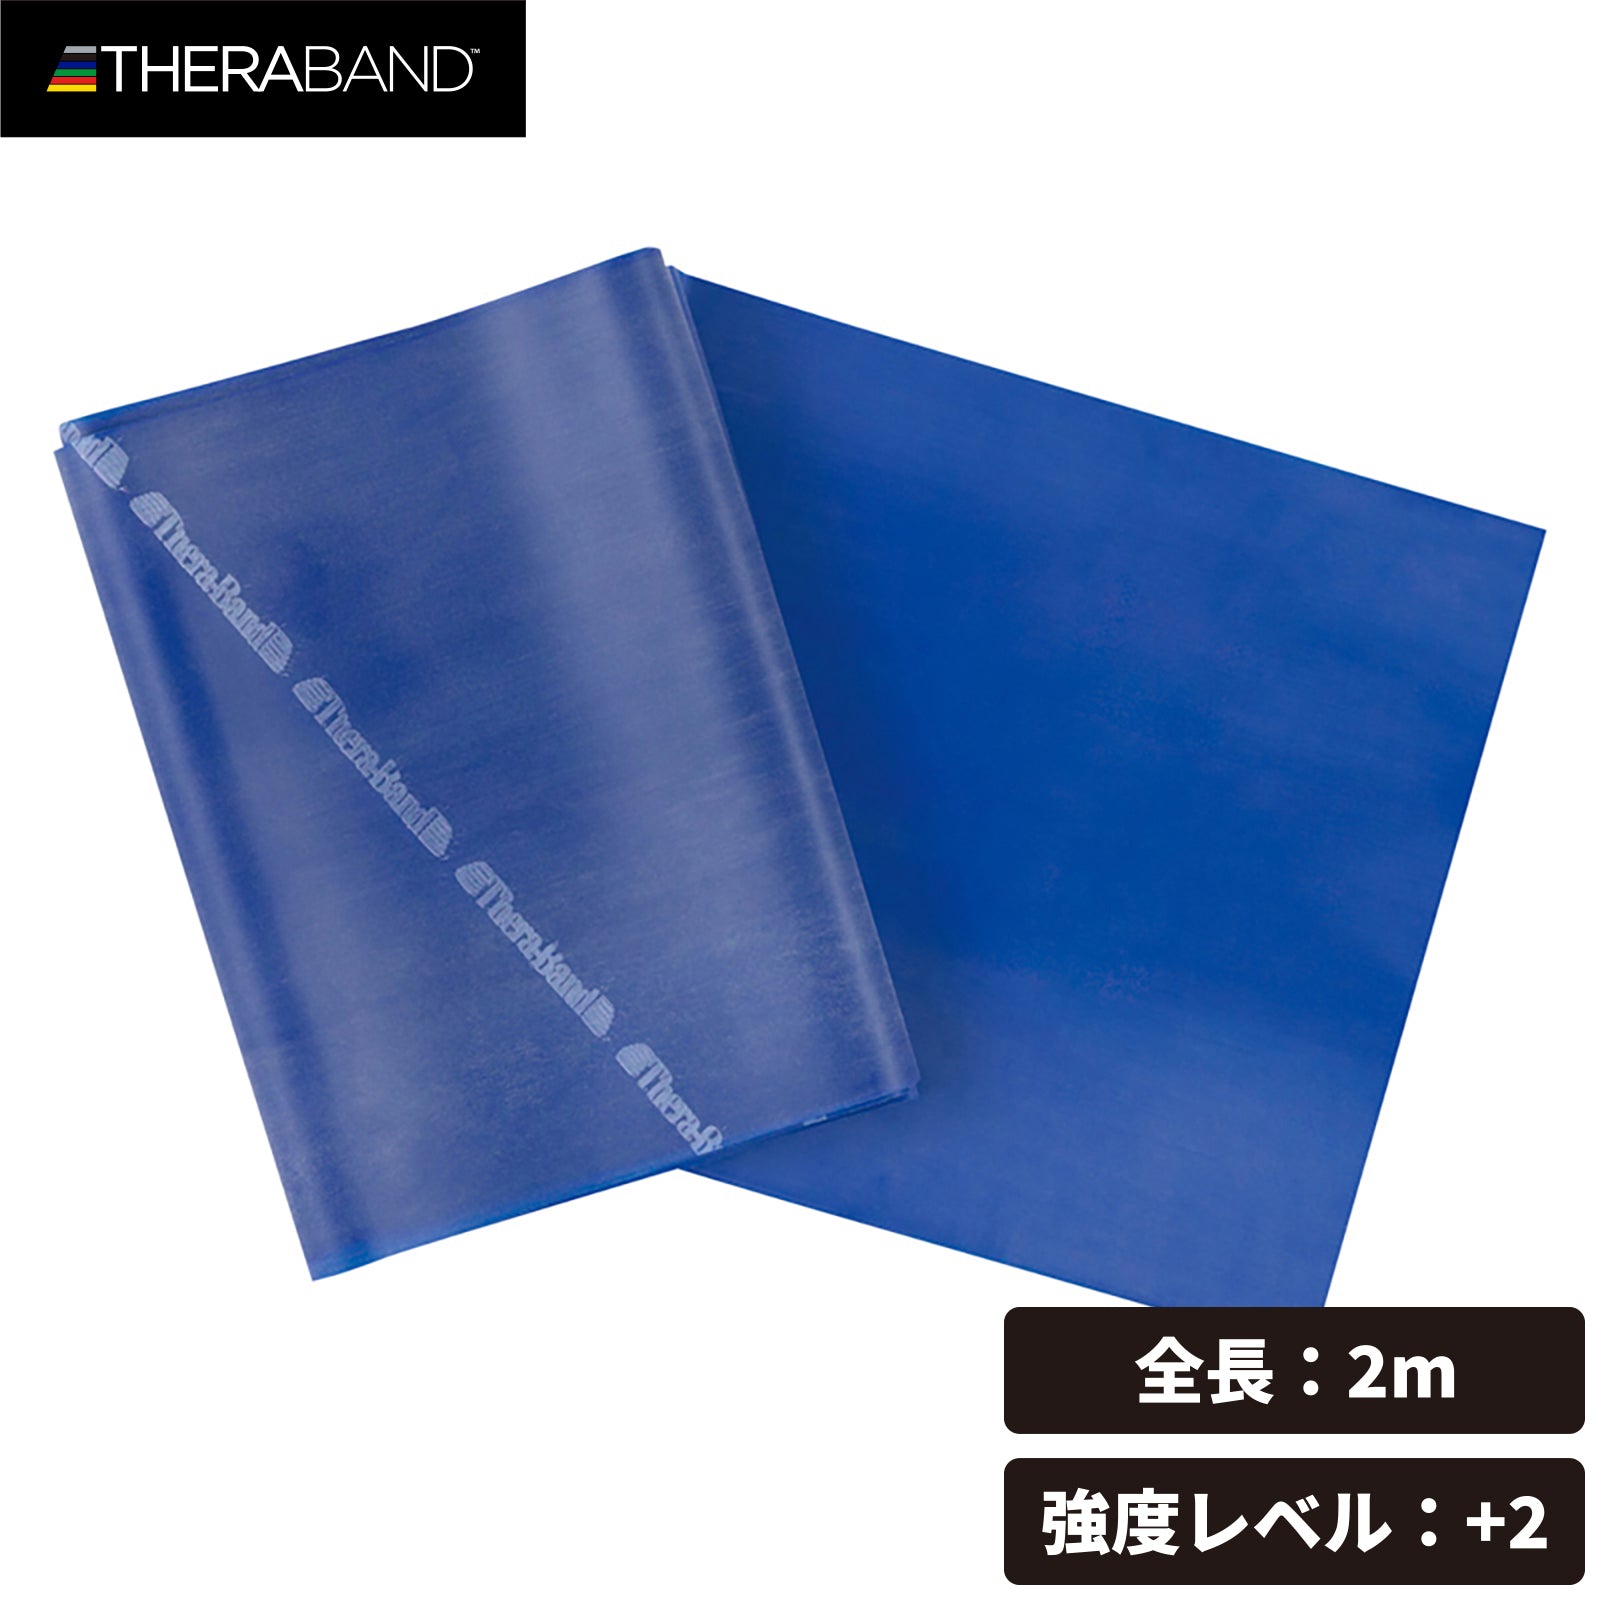 THERABAND セラバンド ブリスターパック 長さ2m 強度レベル+2 ブルー #TBB-4